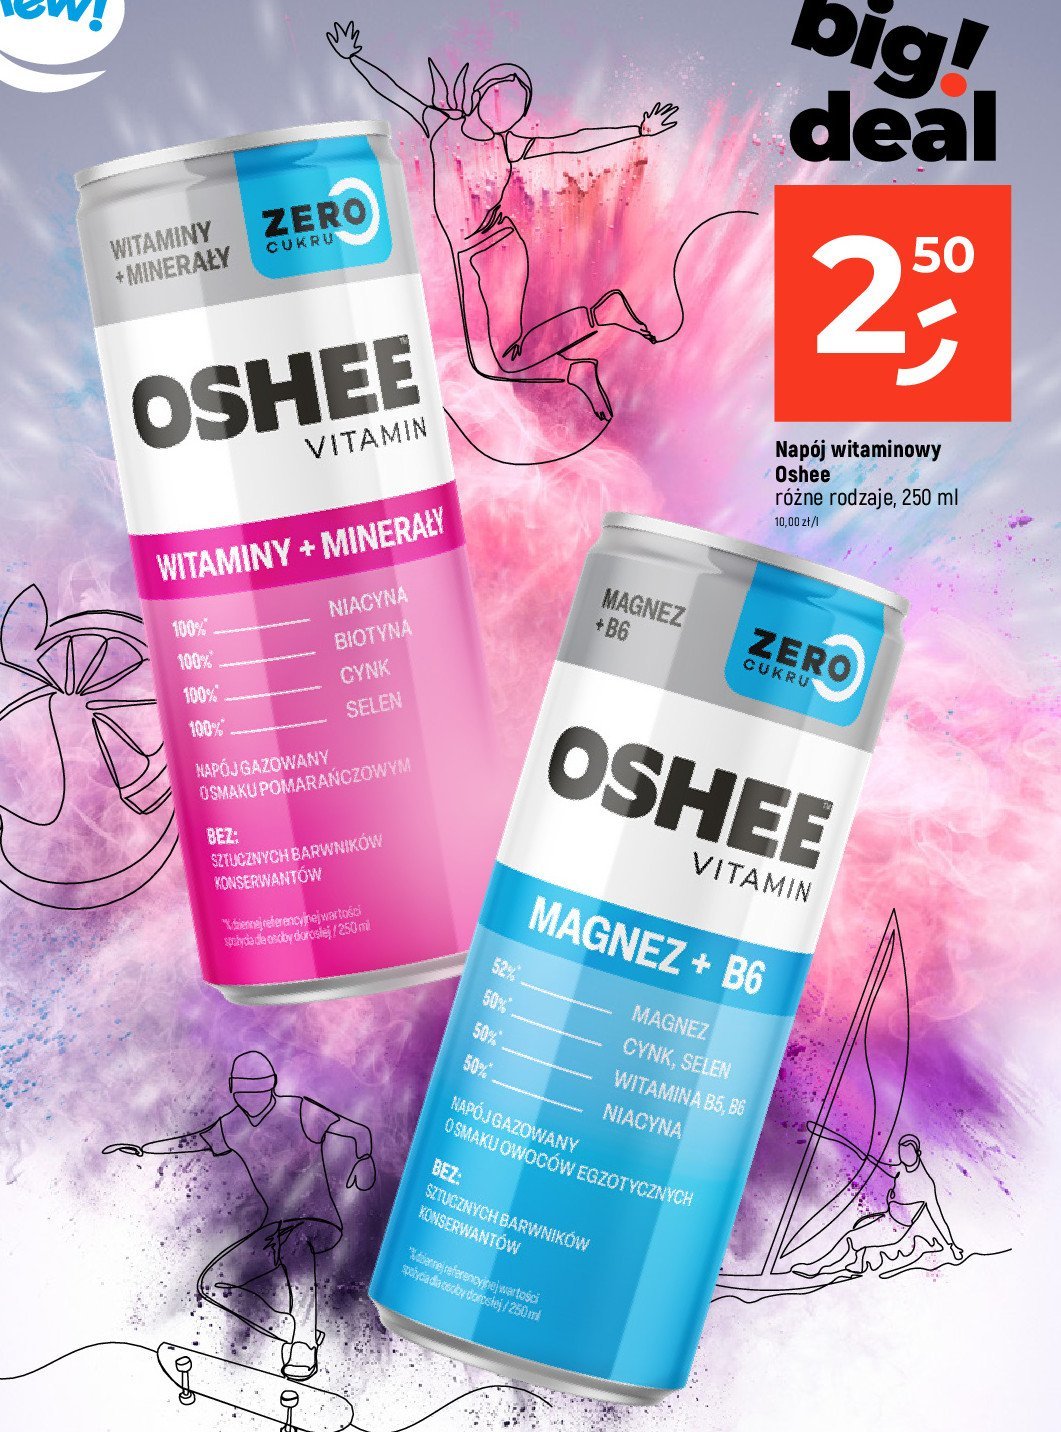 Napój witaminy + minerały Oshee vitamin zero promocja